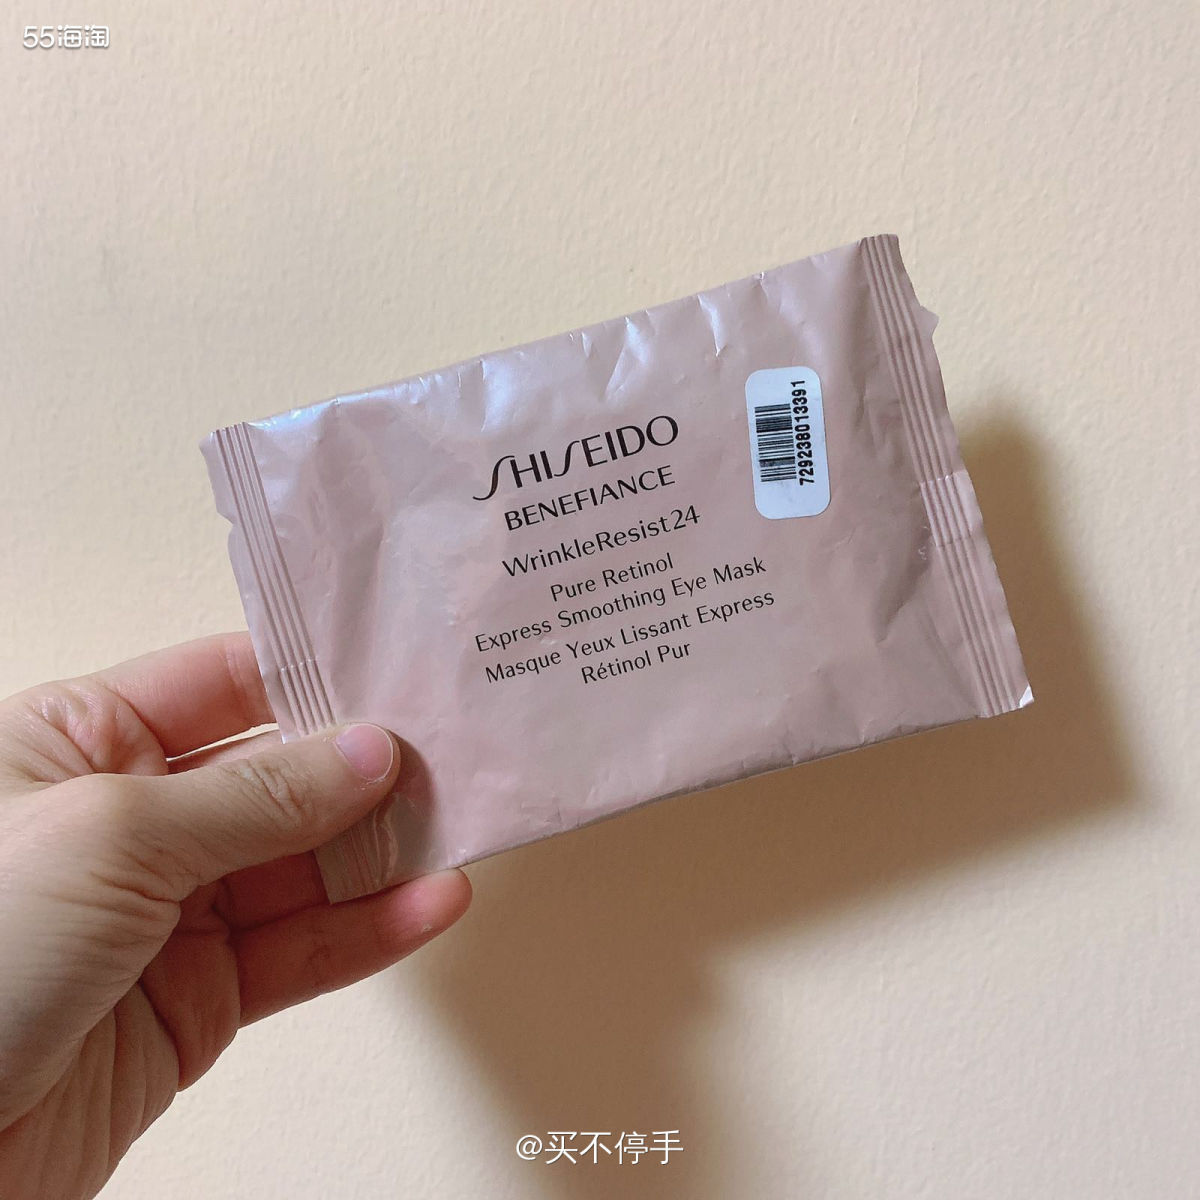 #7天面膜挑战# Shiseido盼丽风姿塑颜去皱眼膜 今天